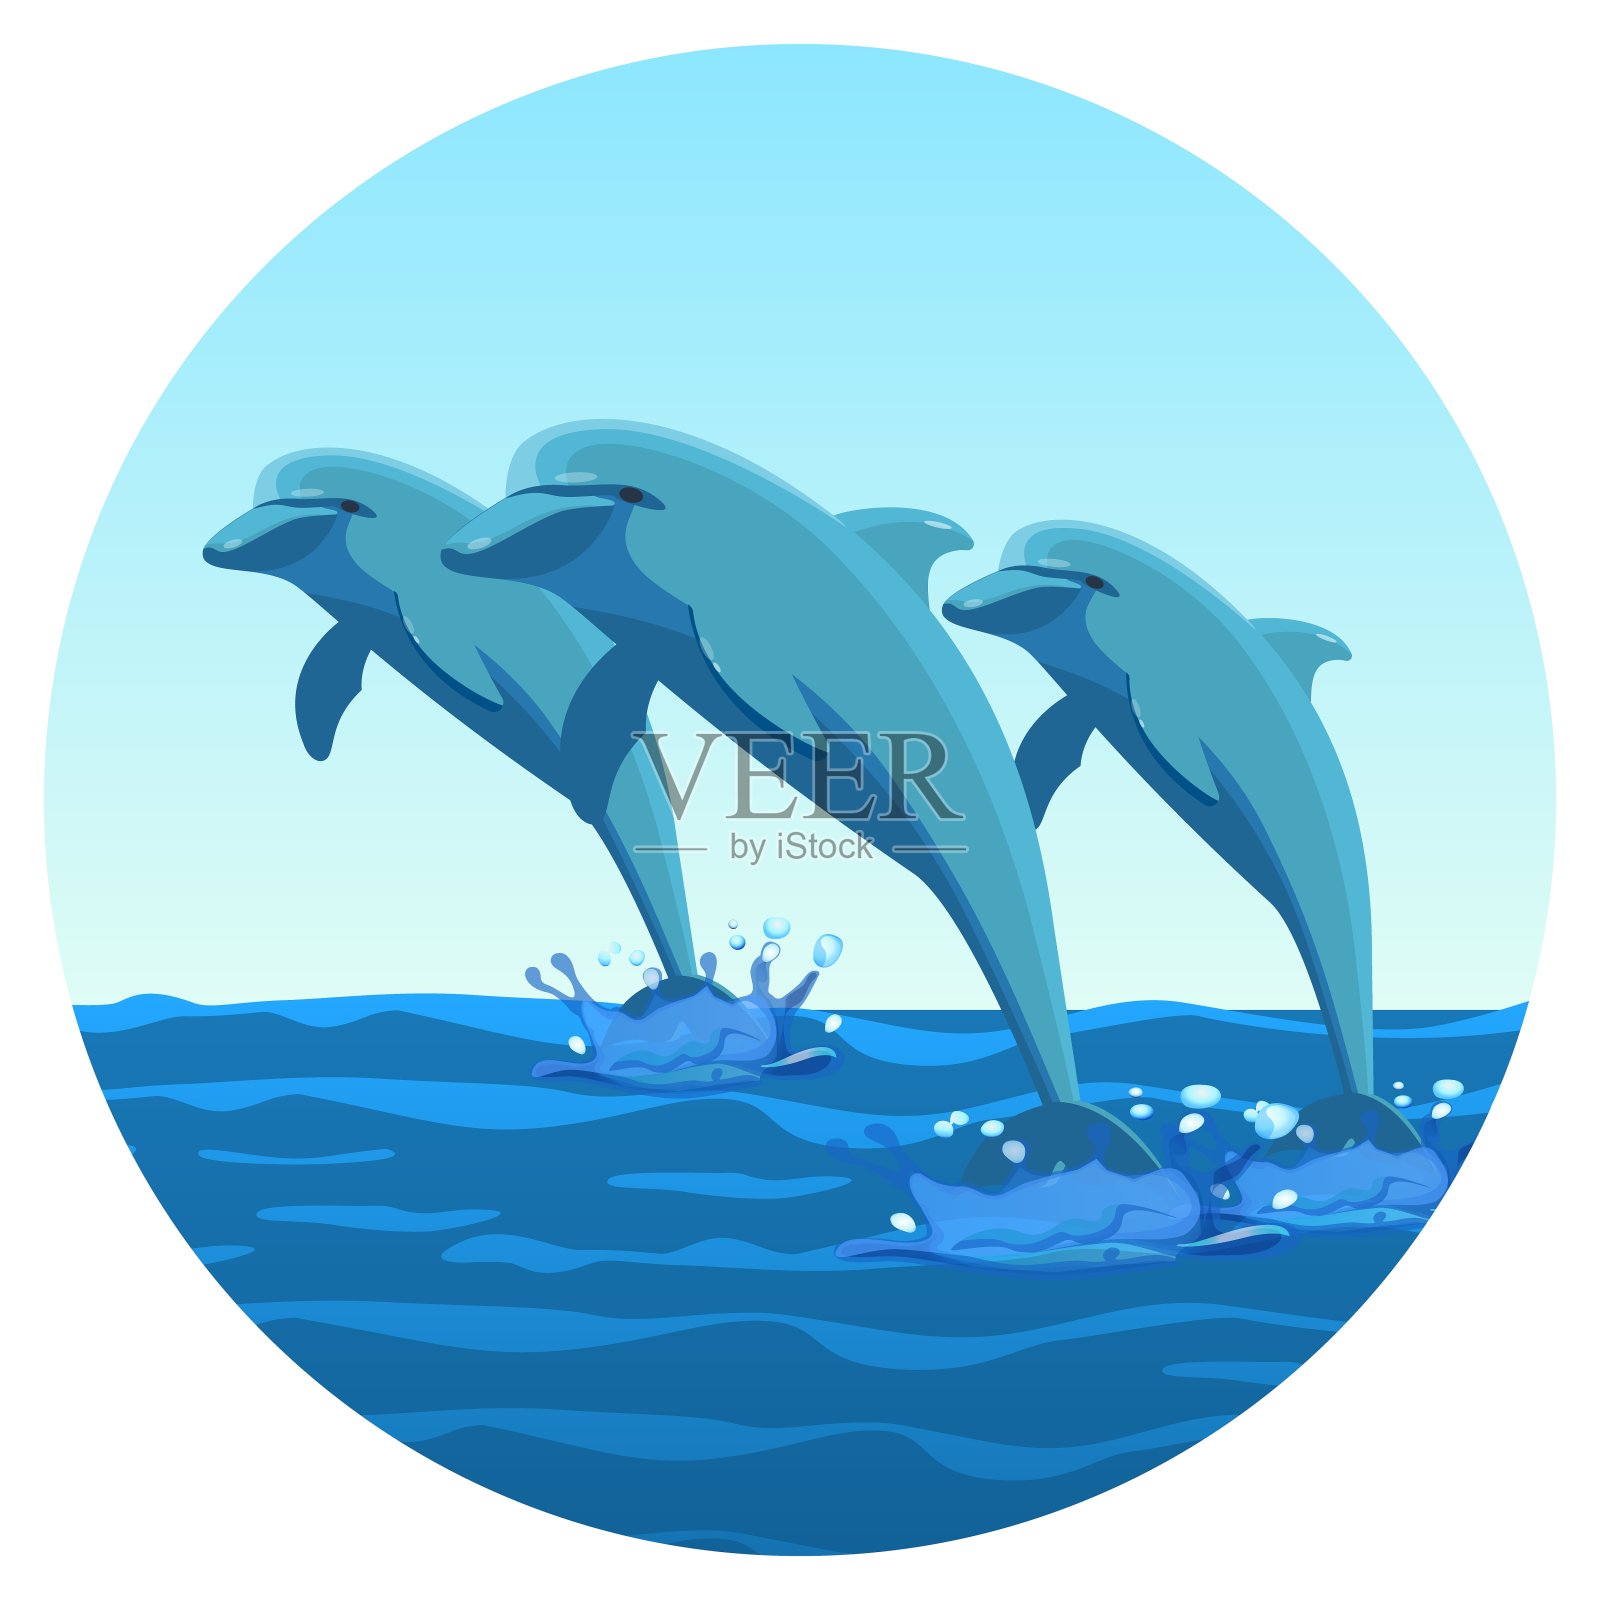 三只海豚同步地跳出水面友好的善良生物设计元素图片